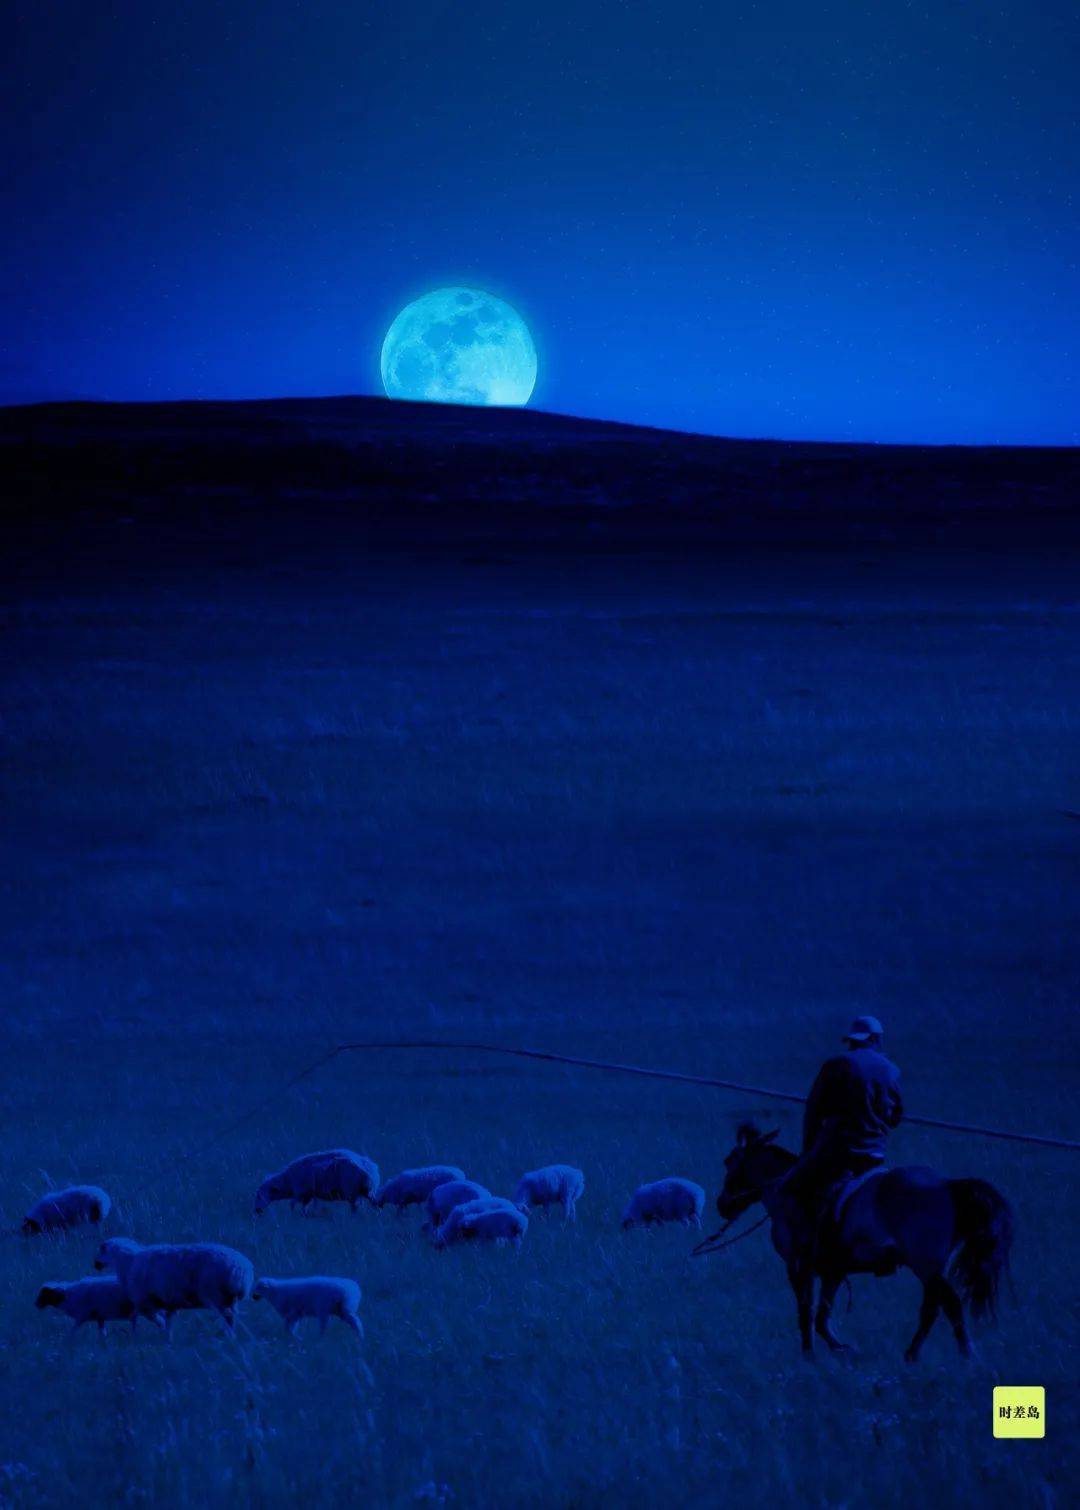 ▼月亮是大草原上唯一的路灯内蒙古草原▼与古人看见的月亮,该最像了!